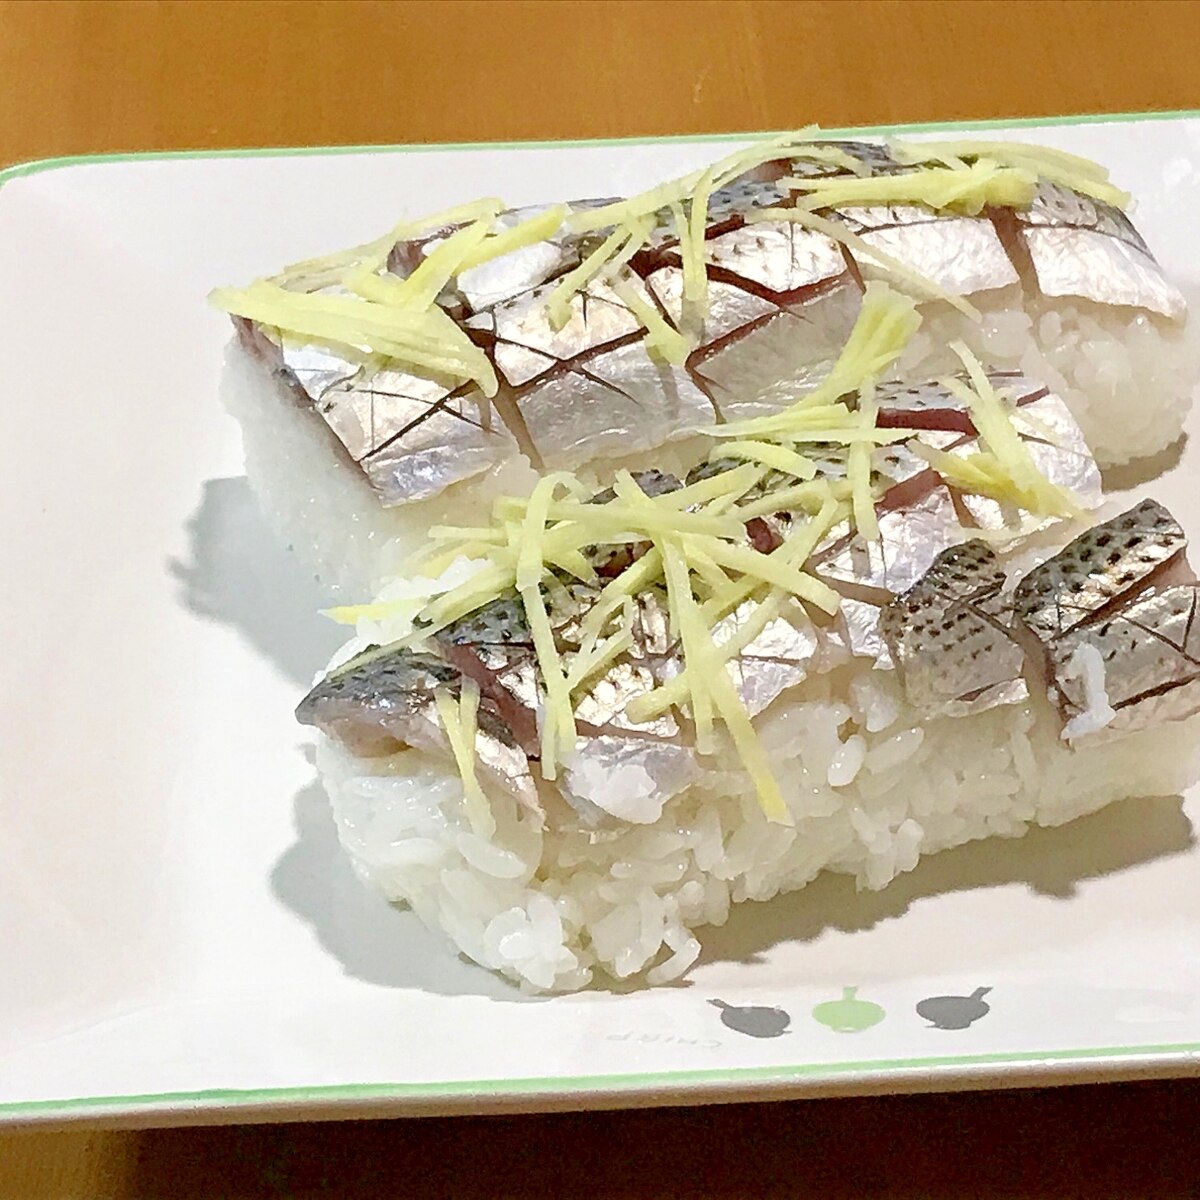 半生が美味い コノシロの押し寿司 レシピ 作り方 By Chika 釣るんじゃけぇ 楽天レシピ